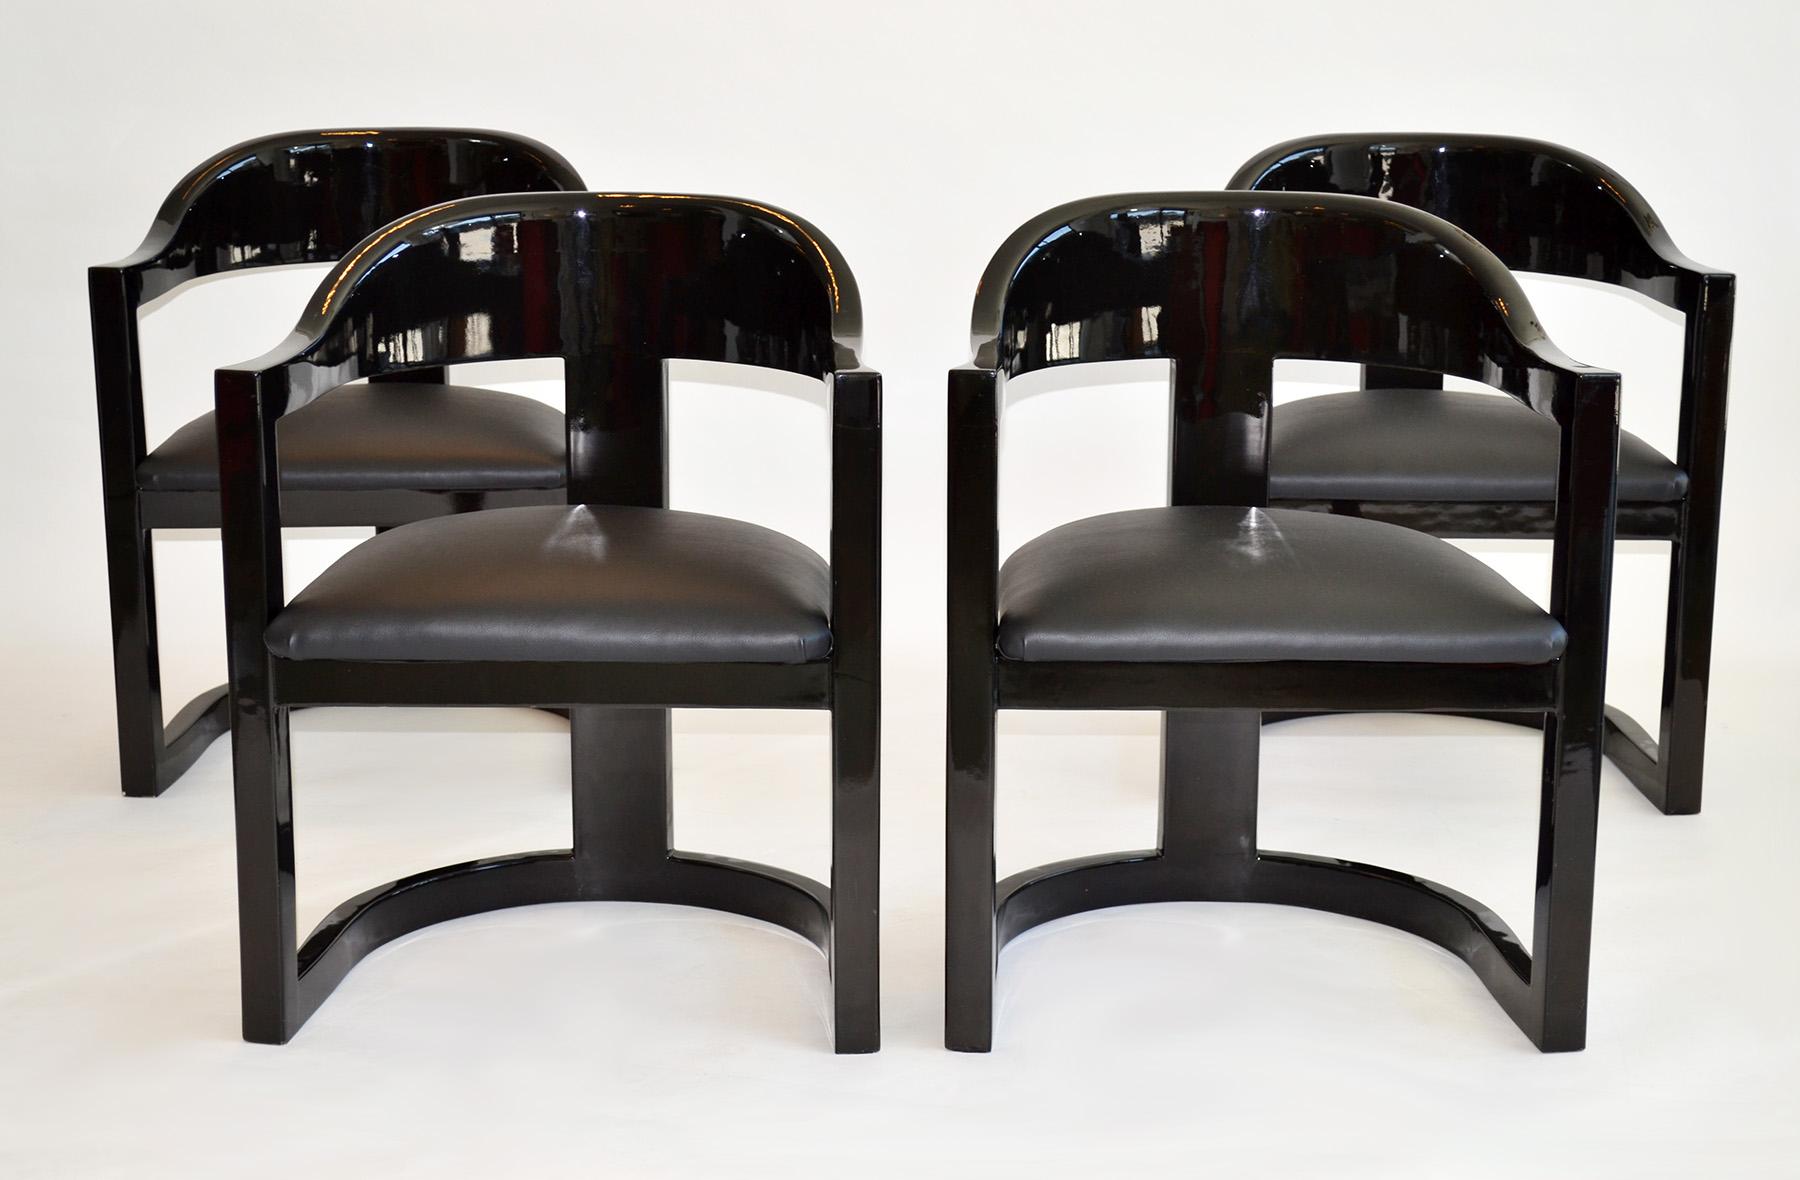 Satz von vier Springer-Esszimmerstühlen im Onassis-Stil aus lackiertem Ziegenleder von Garcel
Diese in den 1980er Jahren für Jimeco Ltda entworfenen Stühle verströmen einen Hauch von Raffinesse und Luxus. Das schlichte, minimalistische Design ist